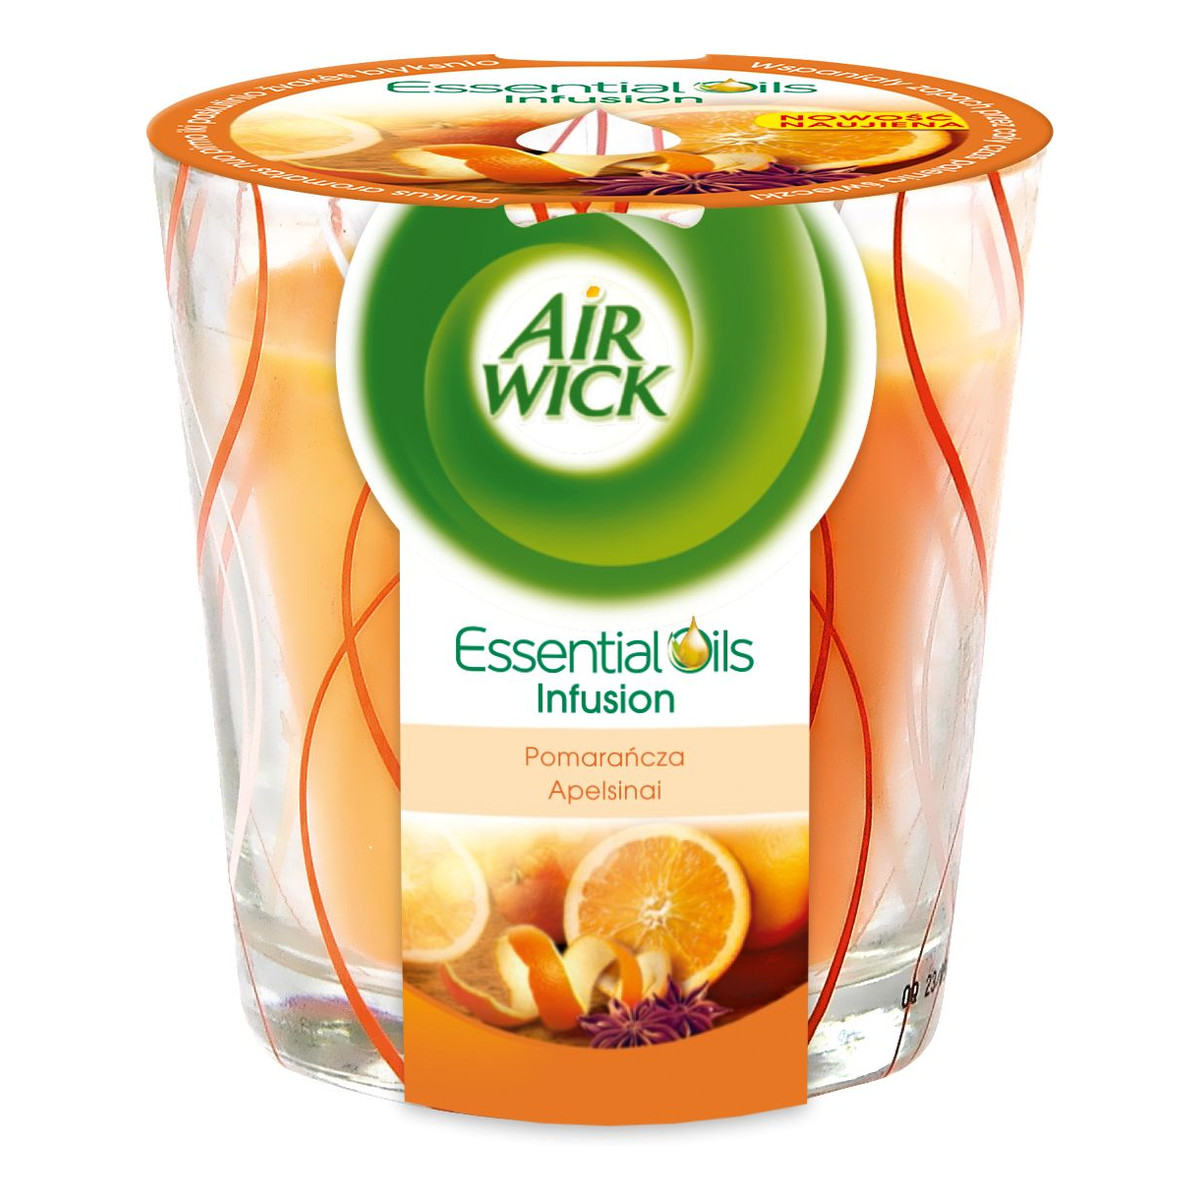 Air Wick Essential Oils Infusion świeczka zapachowa Pomarańcza 105g